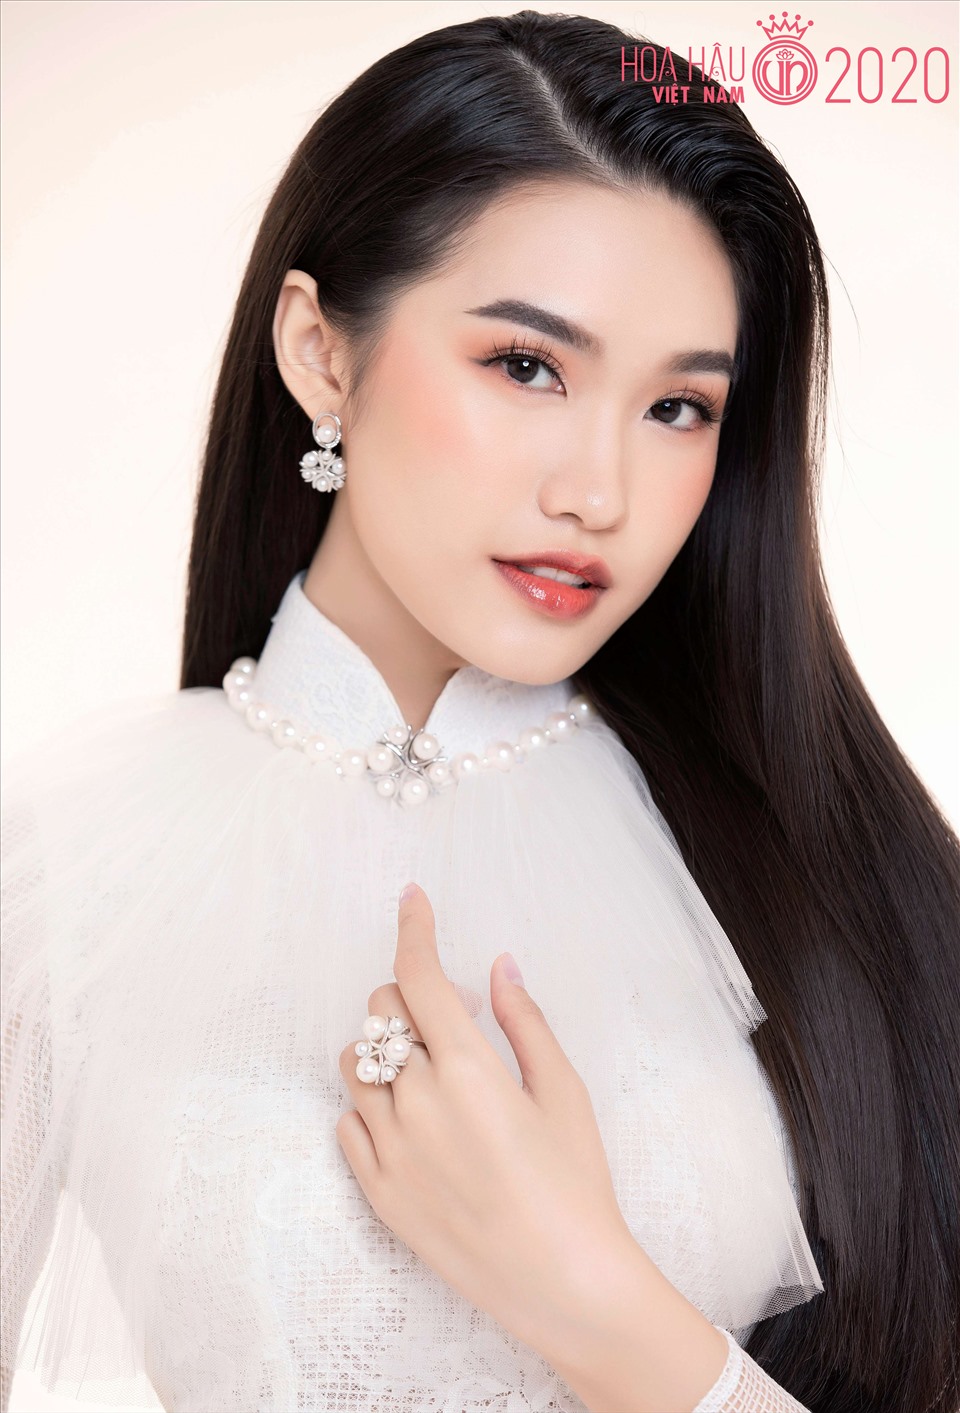 Việc Doãn Hải My sinh năm 2001, đến từ Hà Nội lọt top 35 cô gái vào chung kết Hoa hậu Việt Nam không khiến nhiều người bất ngờ. Bởi ngay từ những ngày đầu, cô đã là một ứng cử viên sáng giá và gây chú ý. Ảnh: HHVN.